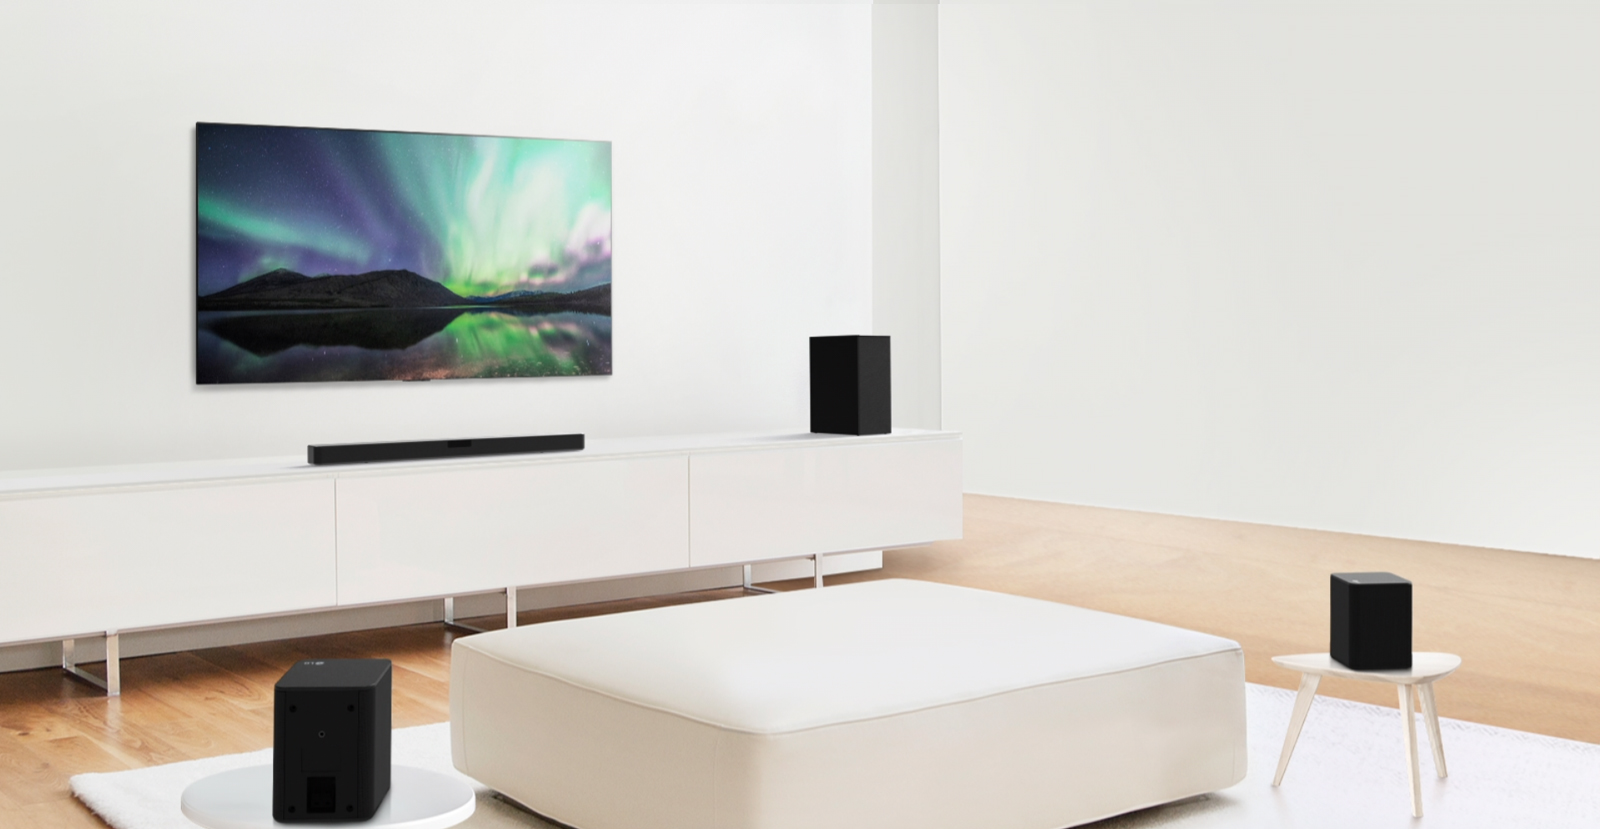 Aperçu vidéo montrant la barre de son LG dans un salon blanc avec une configuration de canaux 4.1.